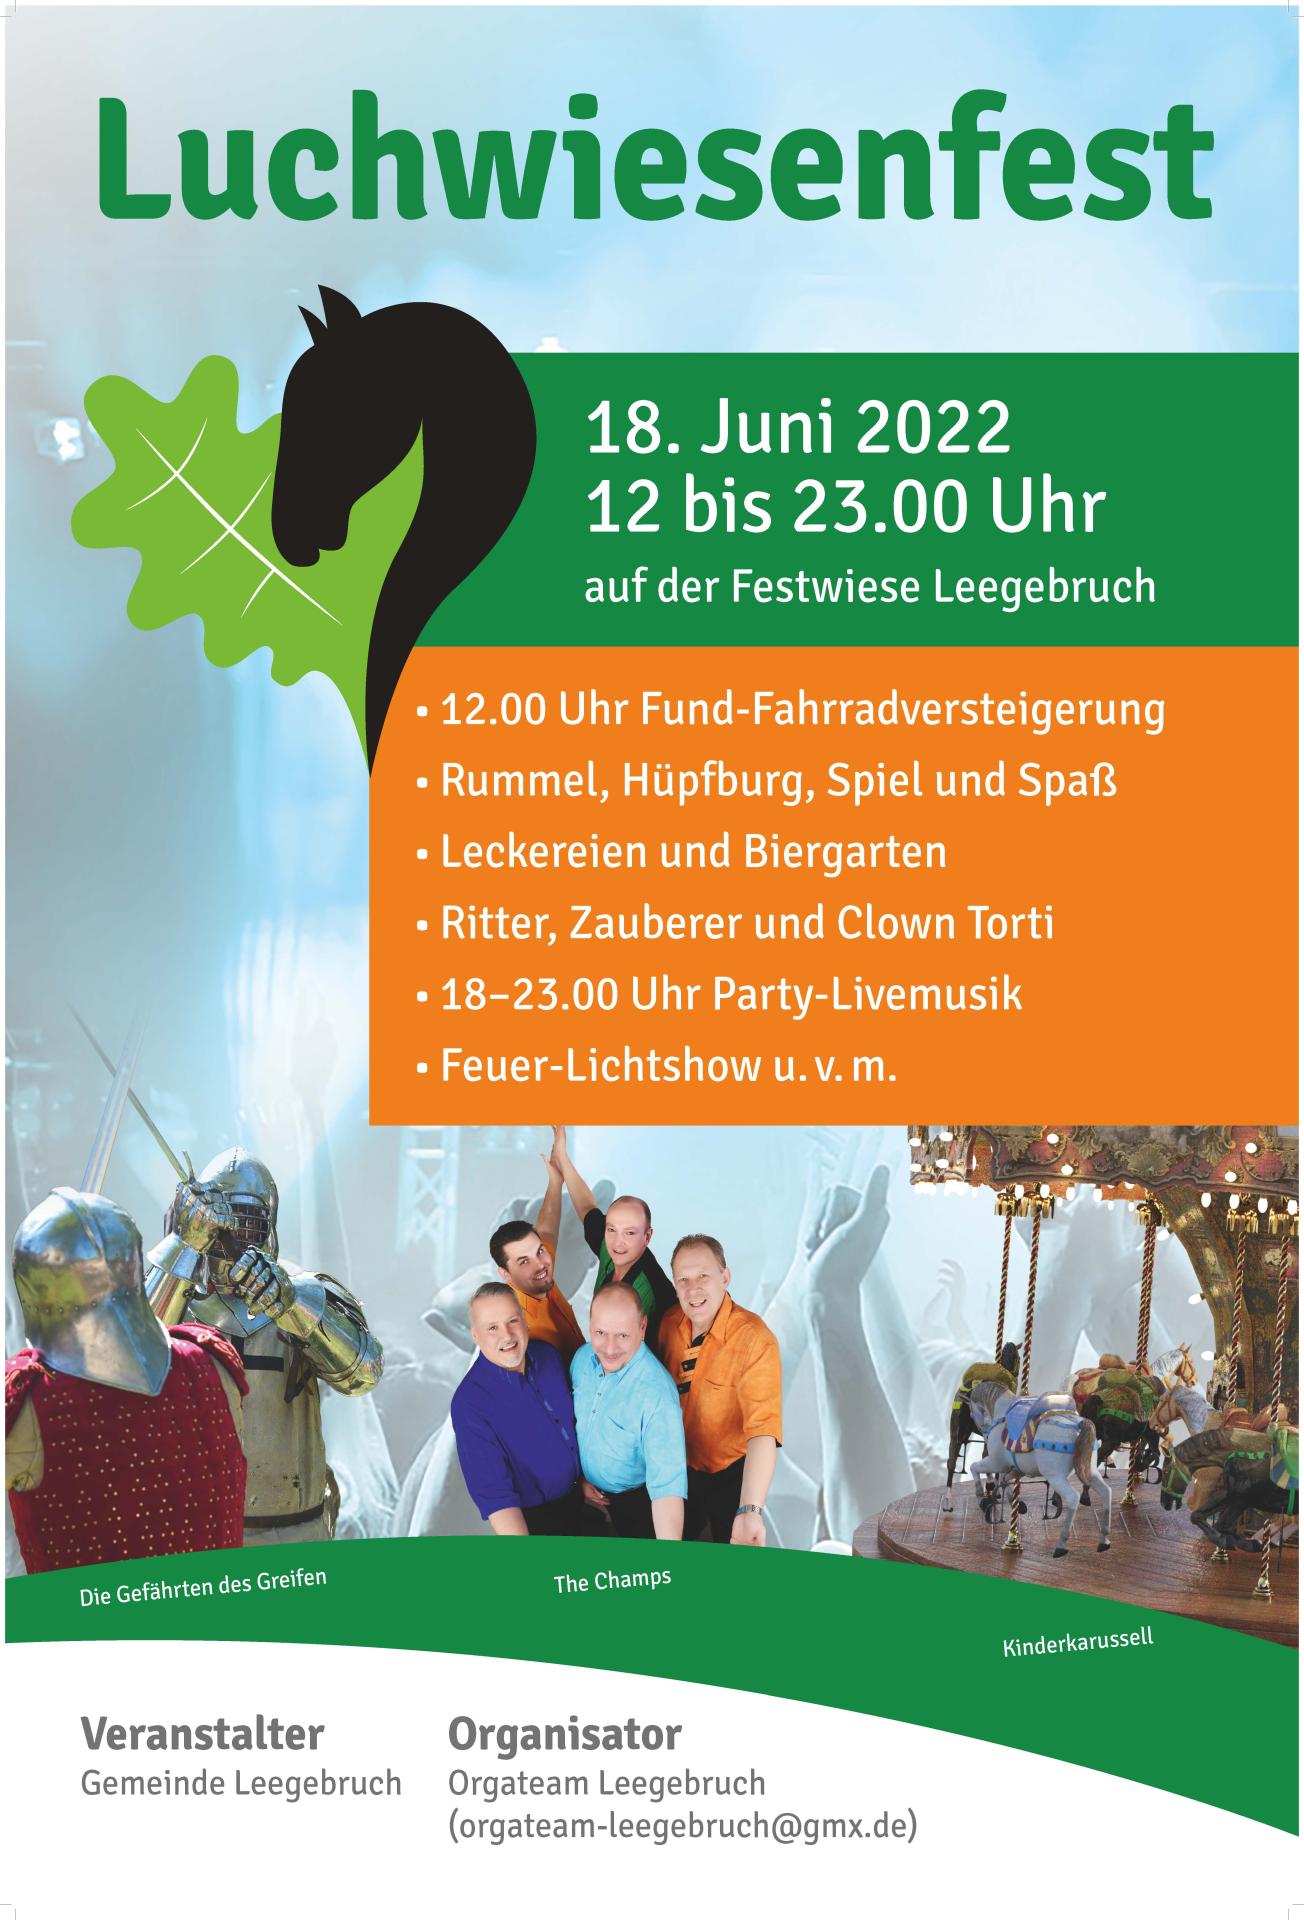 Luchwiesenfest 2022